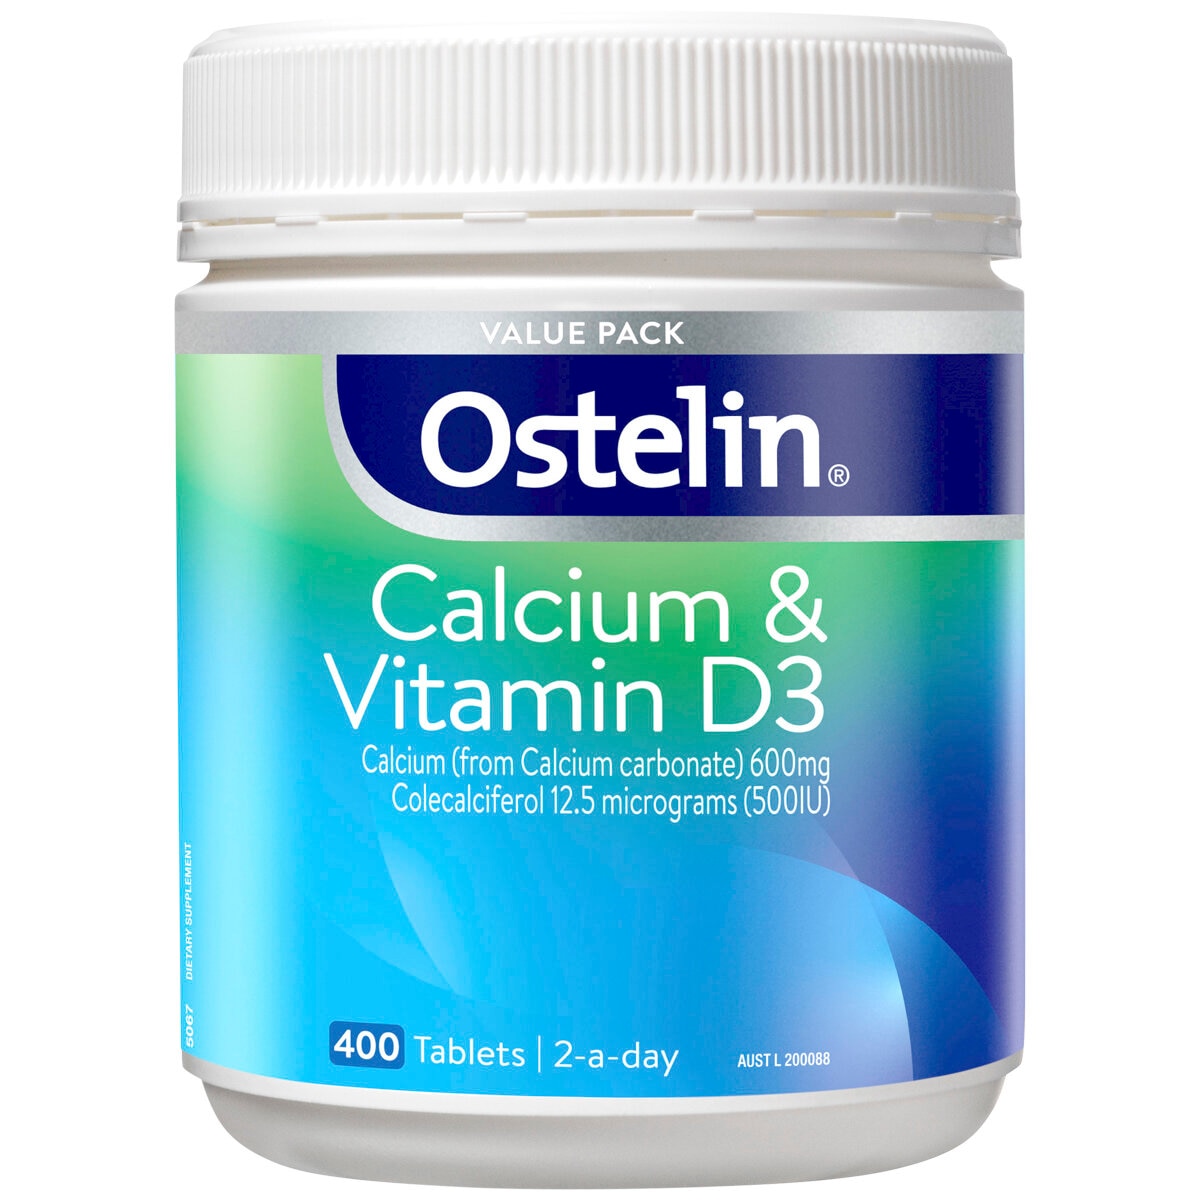 Ostelin & Calcium Vitamin D3